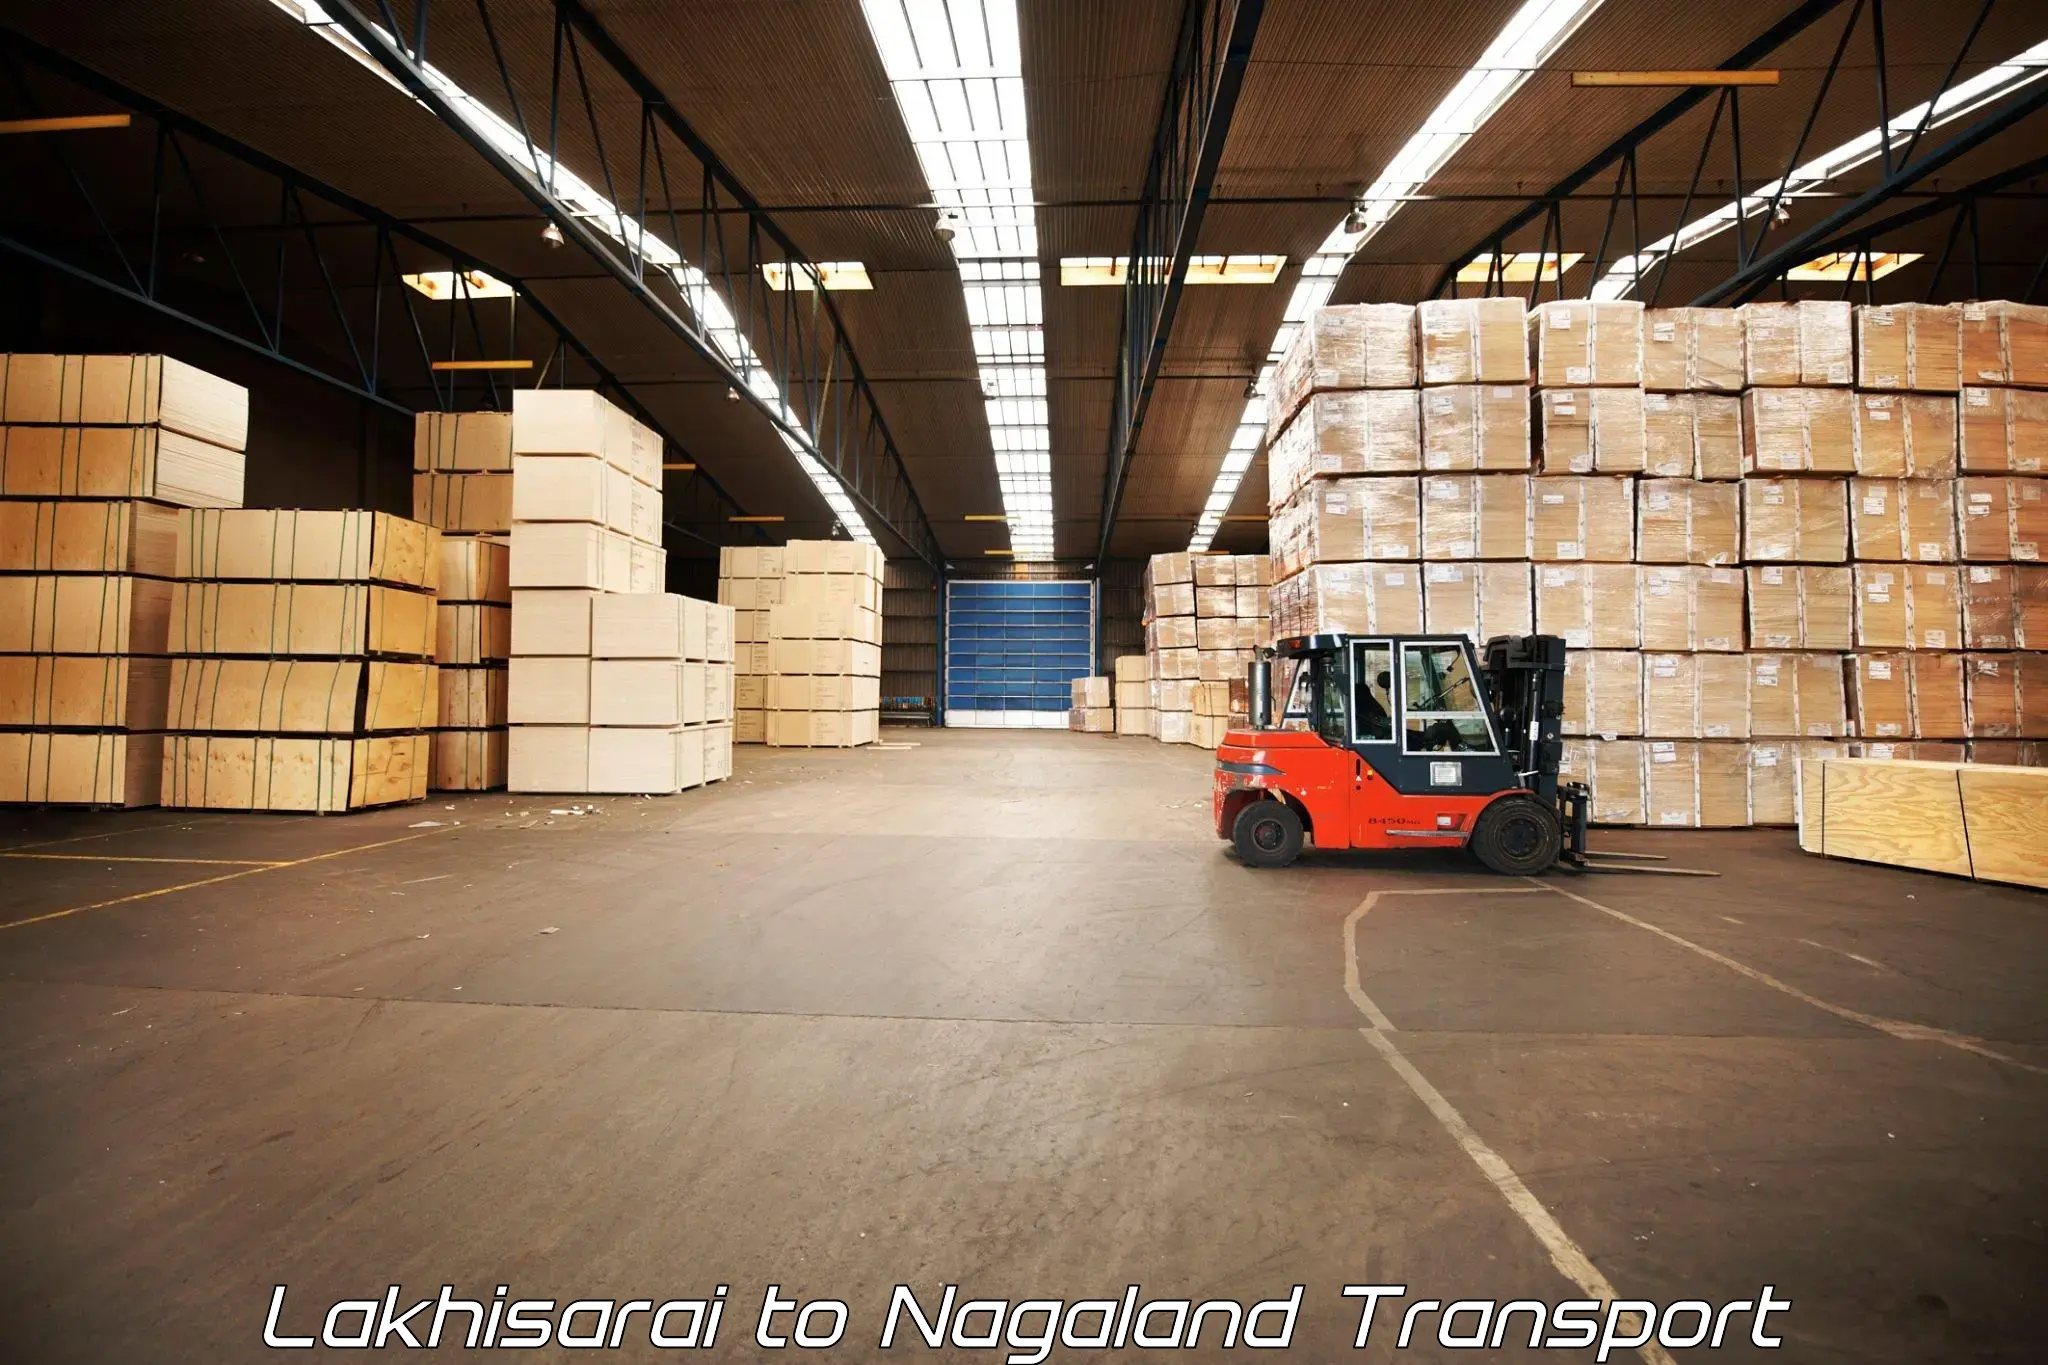 Shipping partner Lakhisarai to Nagaland